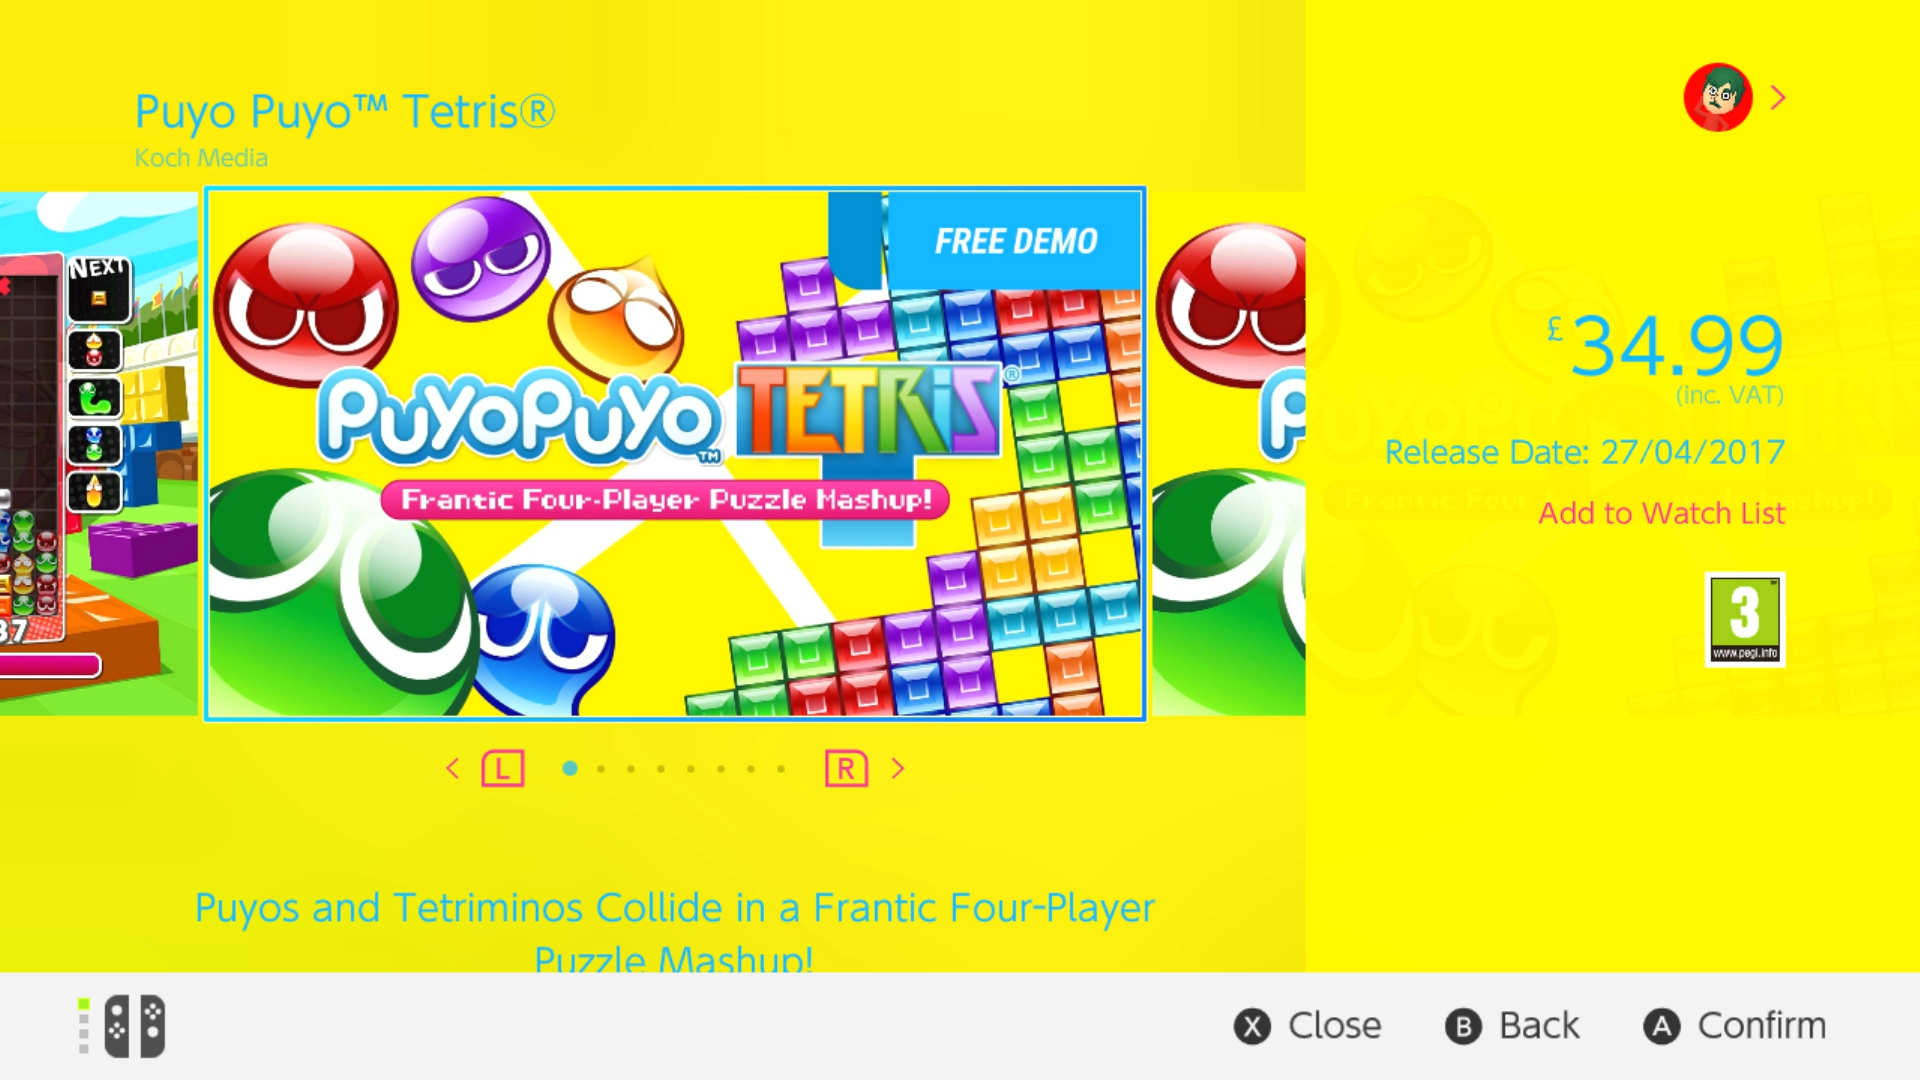 Puyo Puyo Tetris Screenshot 2017-04-10 12-35-05